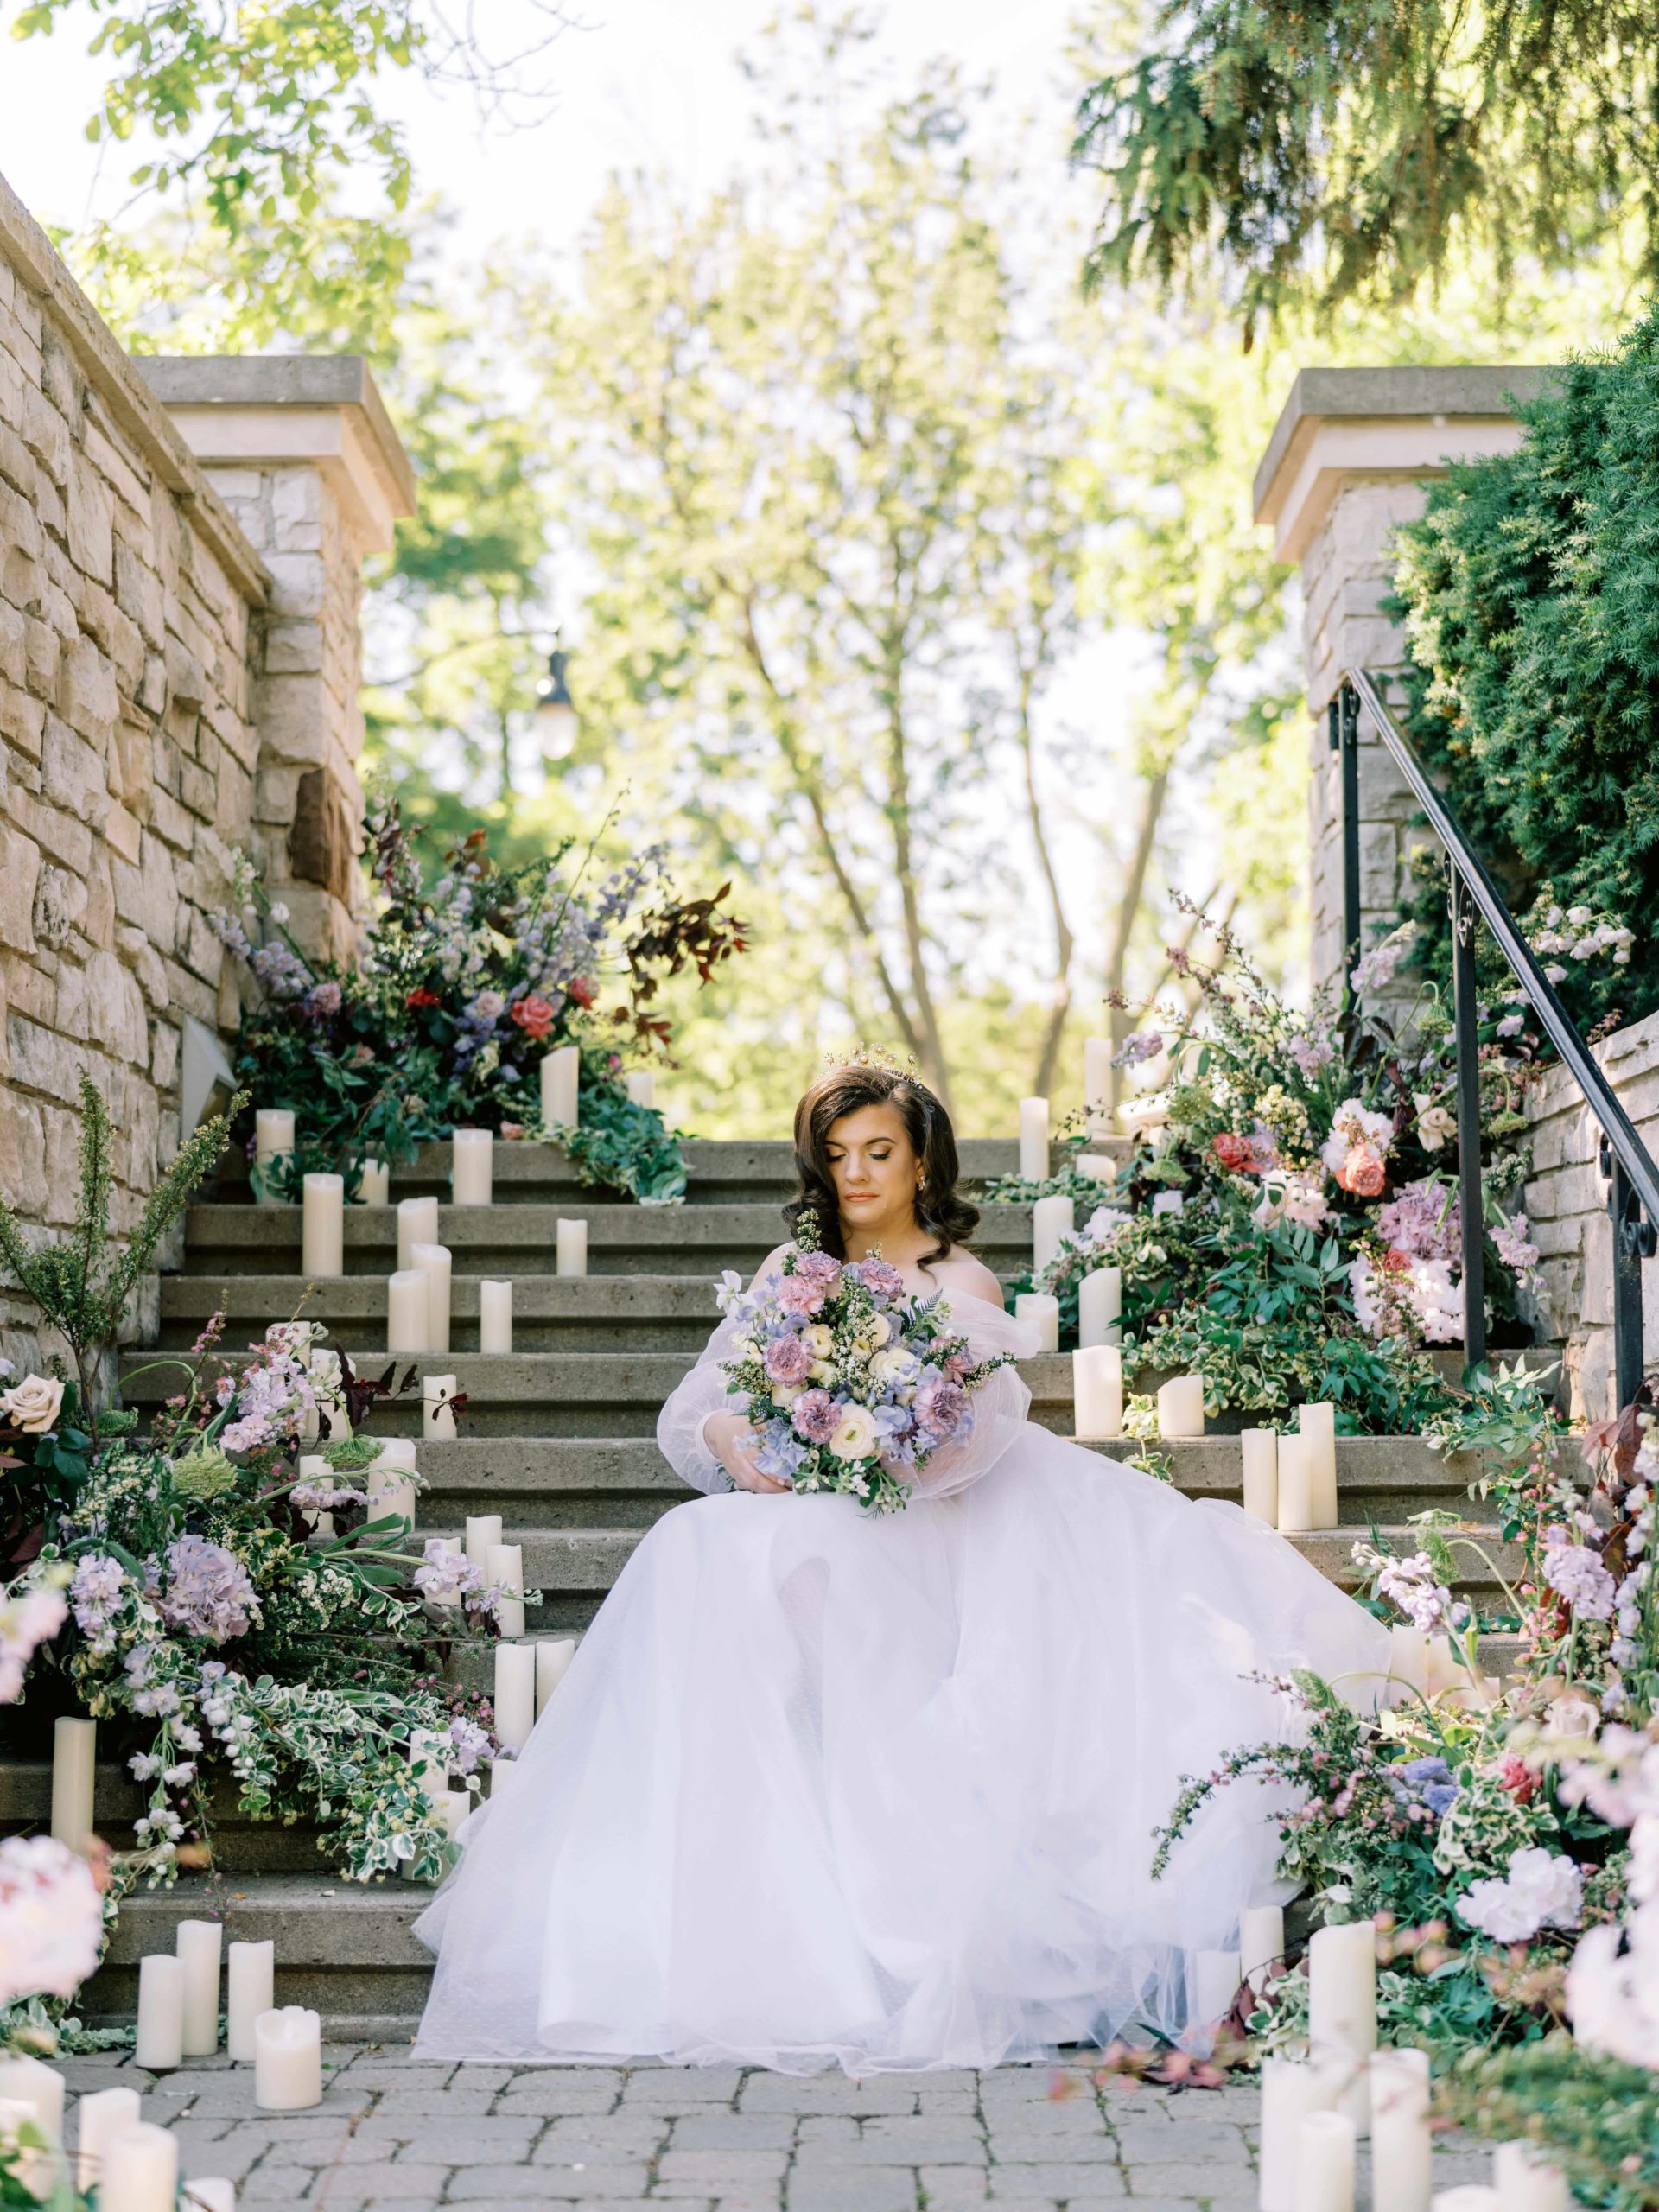 Paletta Mansion Wedding Inspiration - bride on staircase